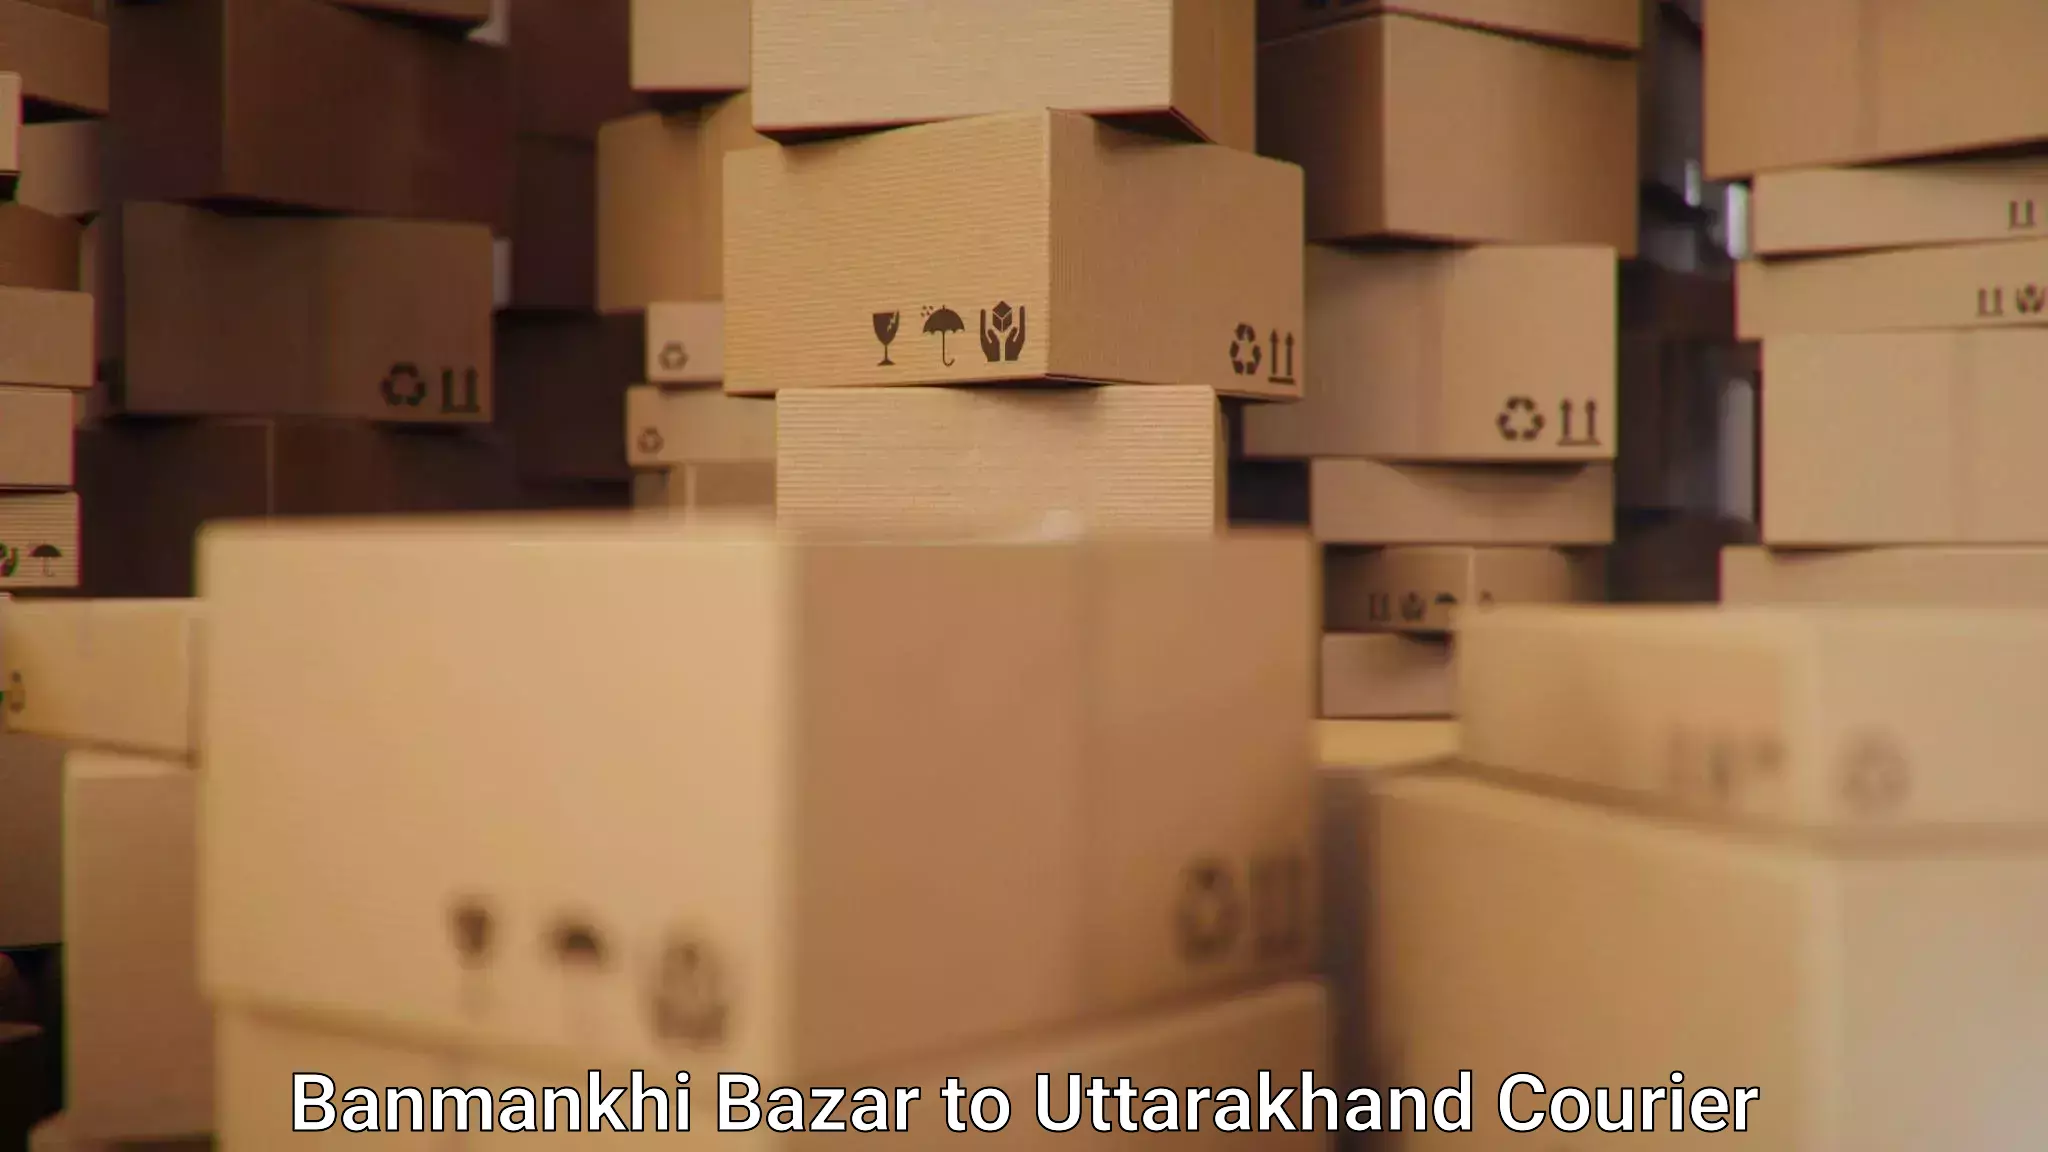 Efficient parcel service Banmankhi Bazar to Tehri